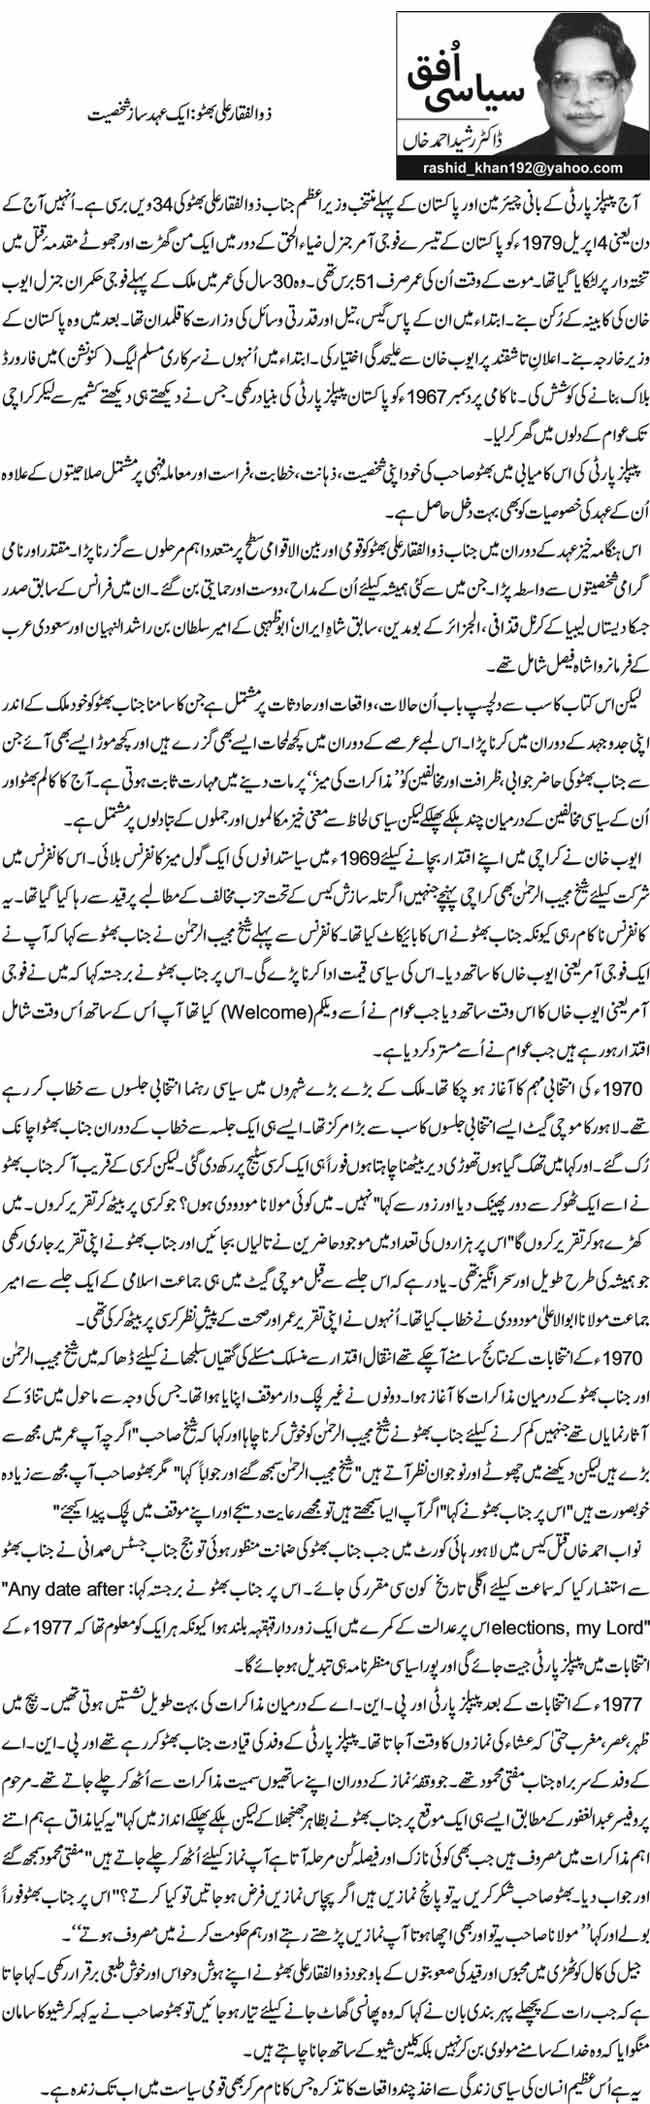 ذوالفقار علی بھٹو: ایک عہد ساز شخصیت 